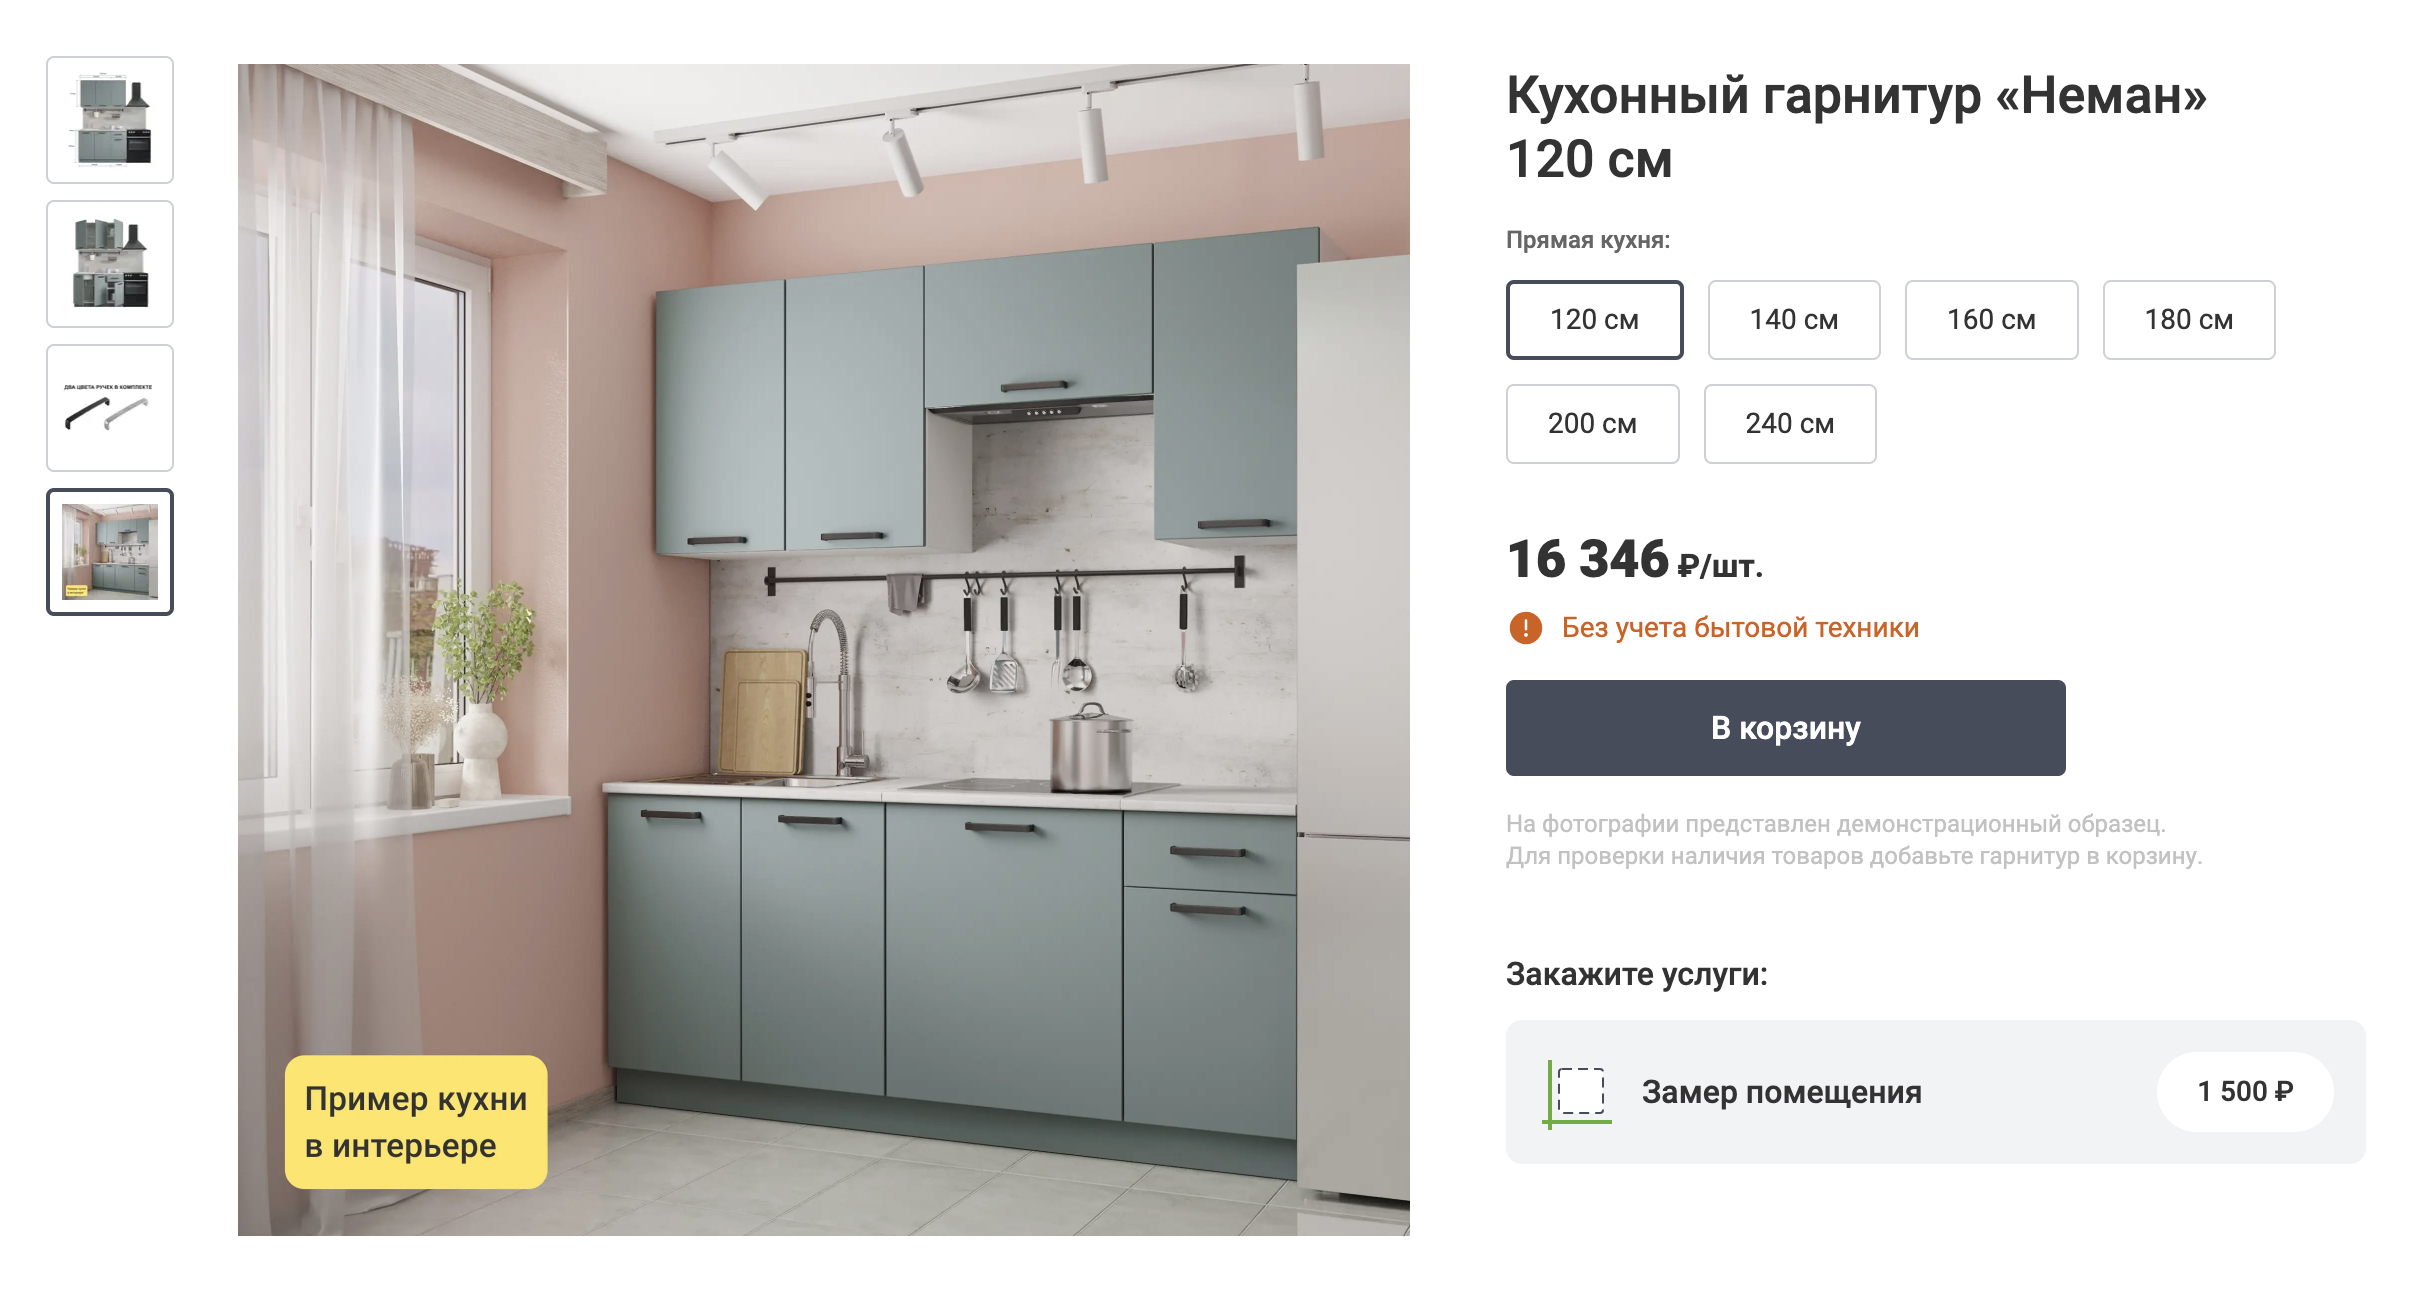 Купить красивые узкие кухни от производителя. Фабрика мебели natali-fashion.ru